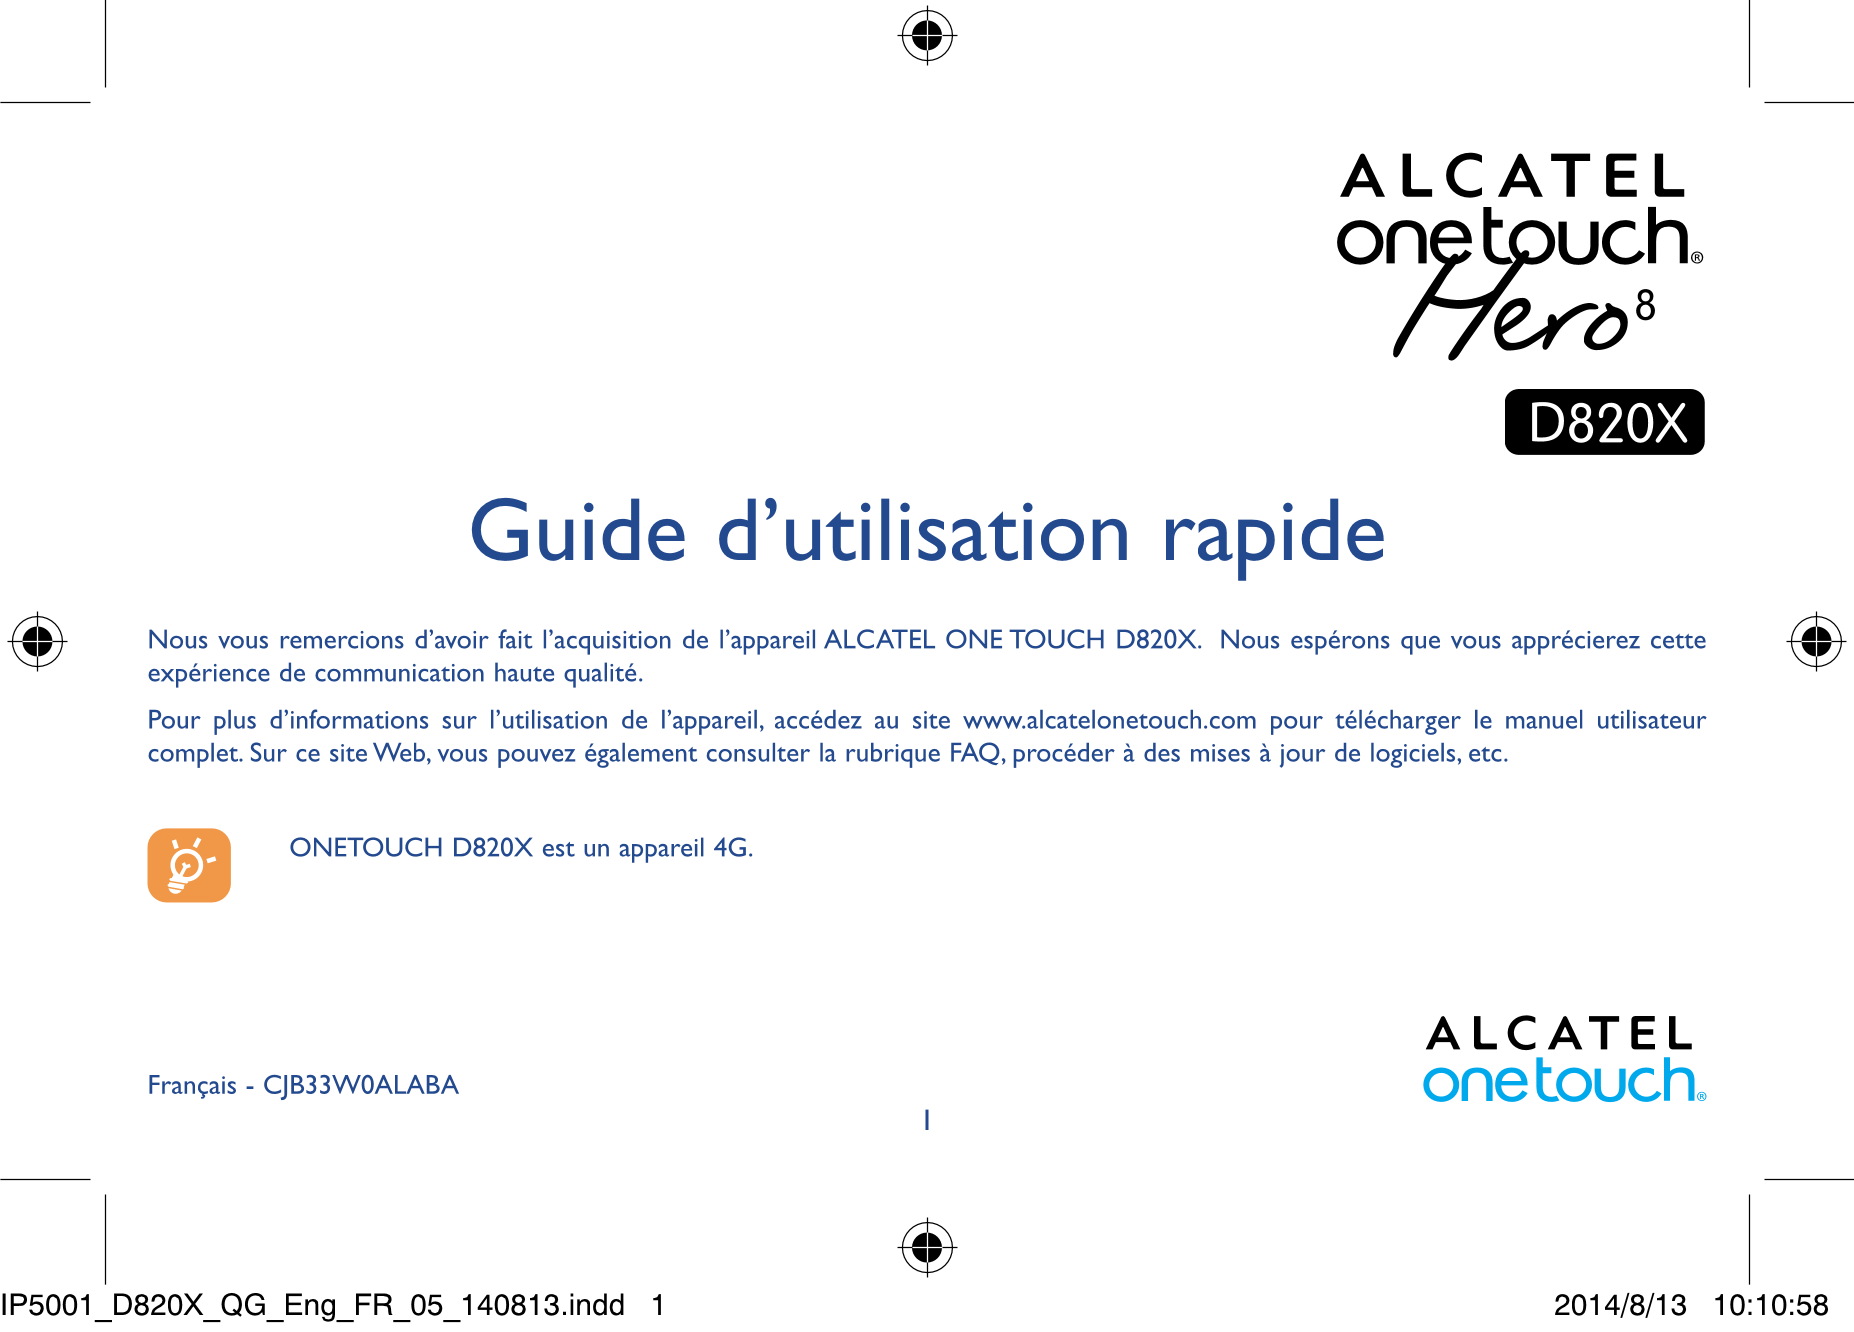 Guide d’utilisation rapide
Nous vous remercions d’avoir fait l’acquisition de l’appareil ALCATEL ONE TOUCH D820X.  Nous espérons